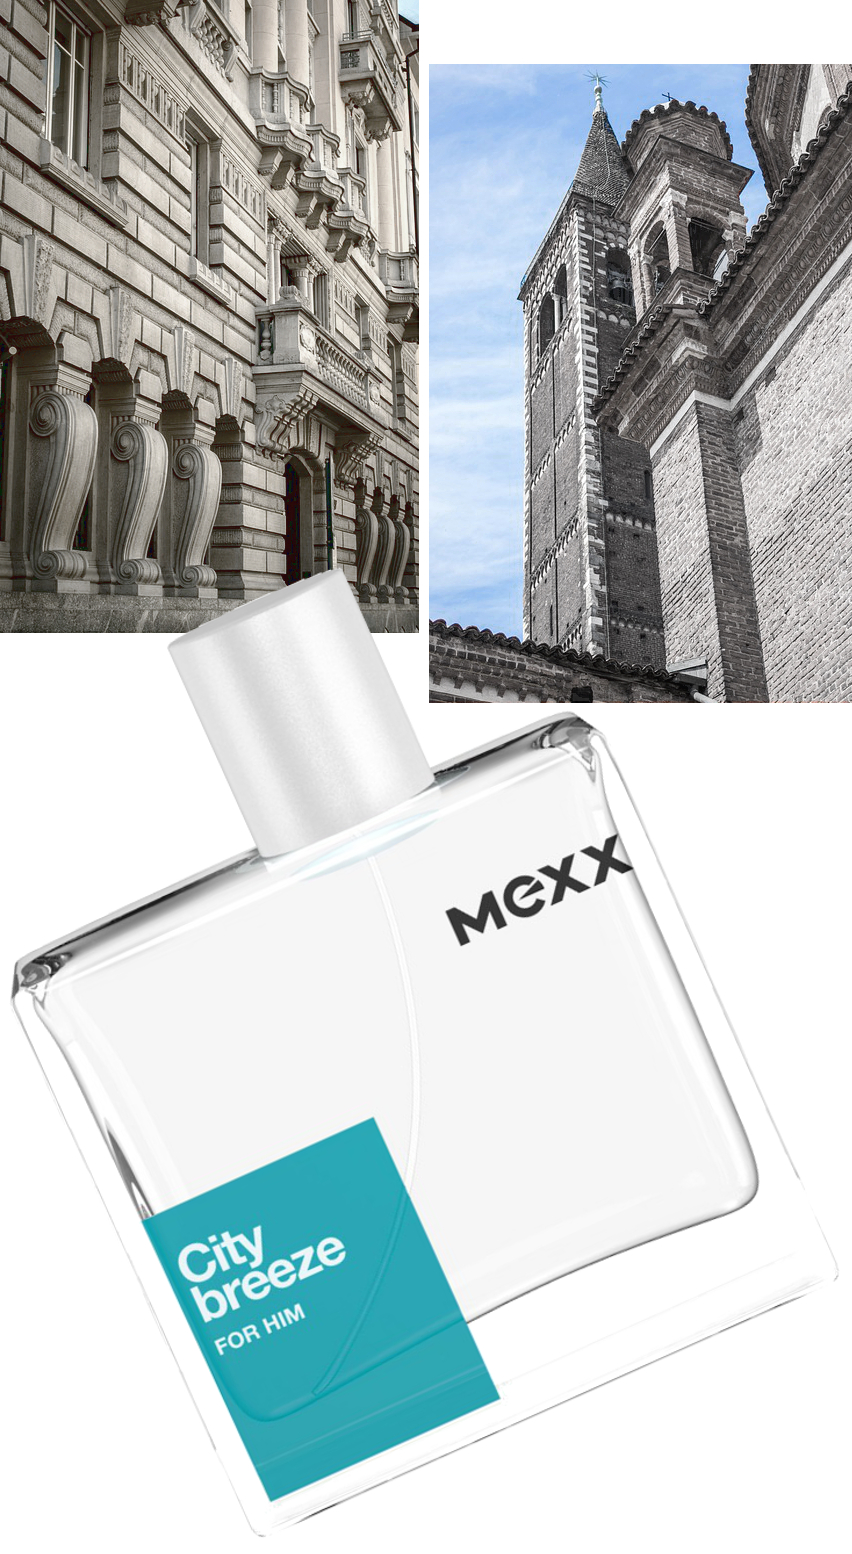 Mexx in Mailand - MEXX CITY BREEZE PARFUM REVIEW - Fashion Blog Für Männer - Mister Matthew -